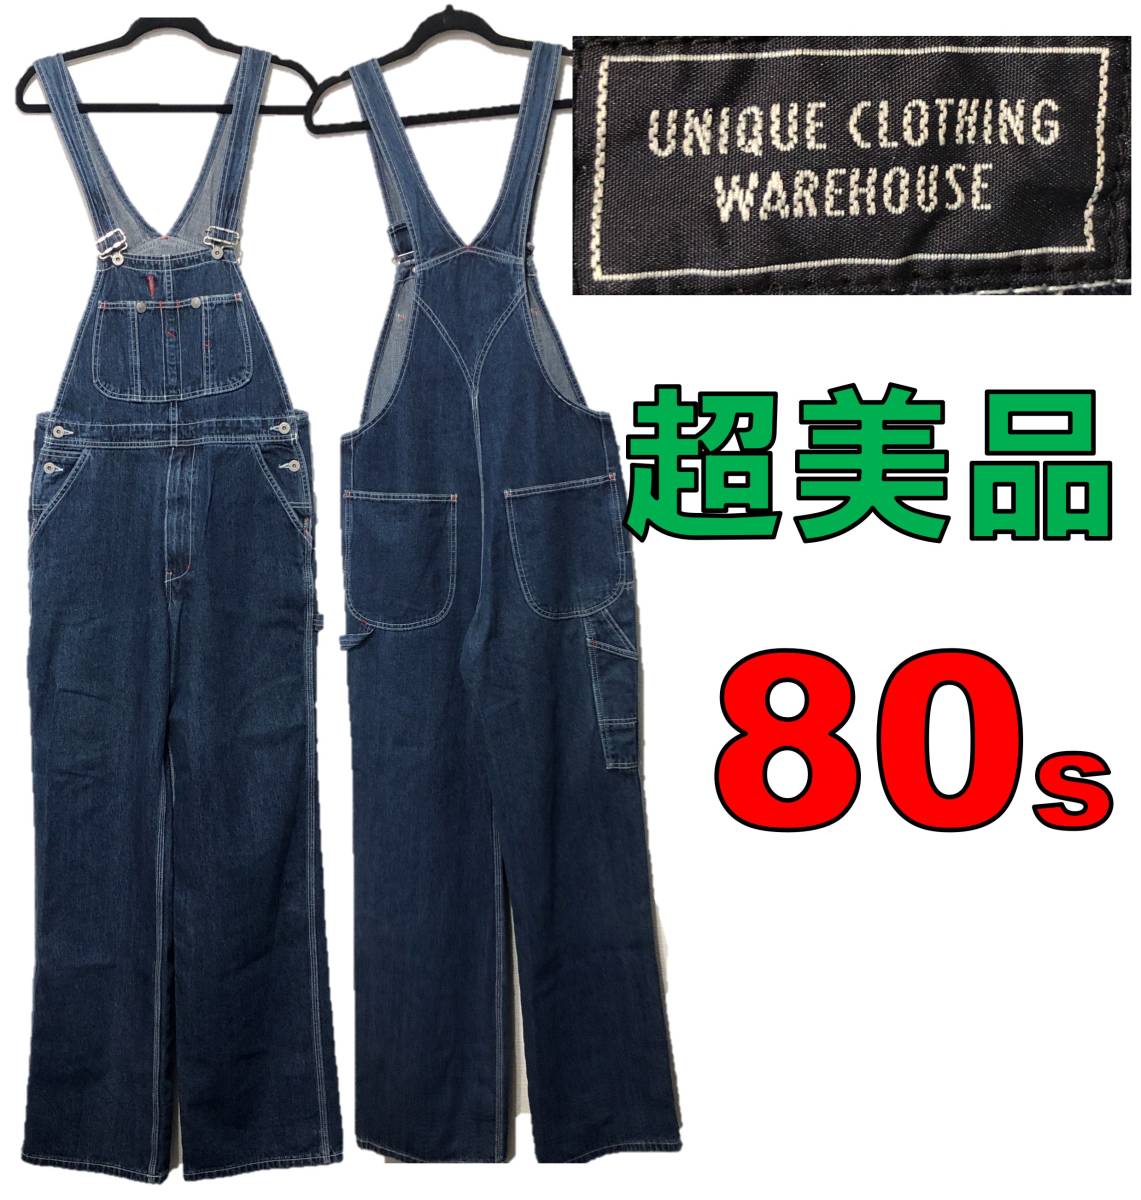 UNIQUE CLOTHING WAREHOUSE オーバーオール パンツ S-